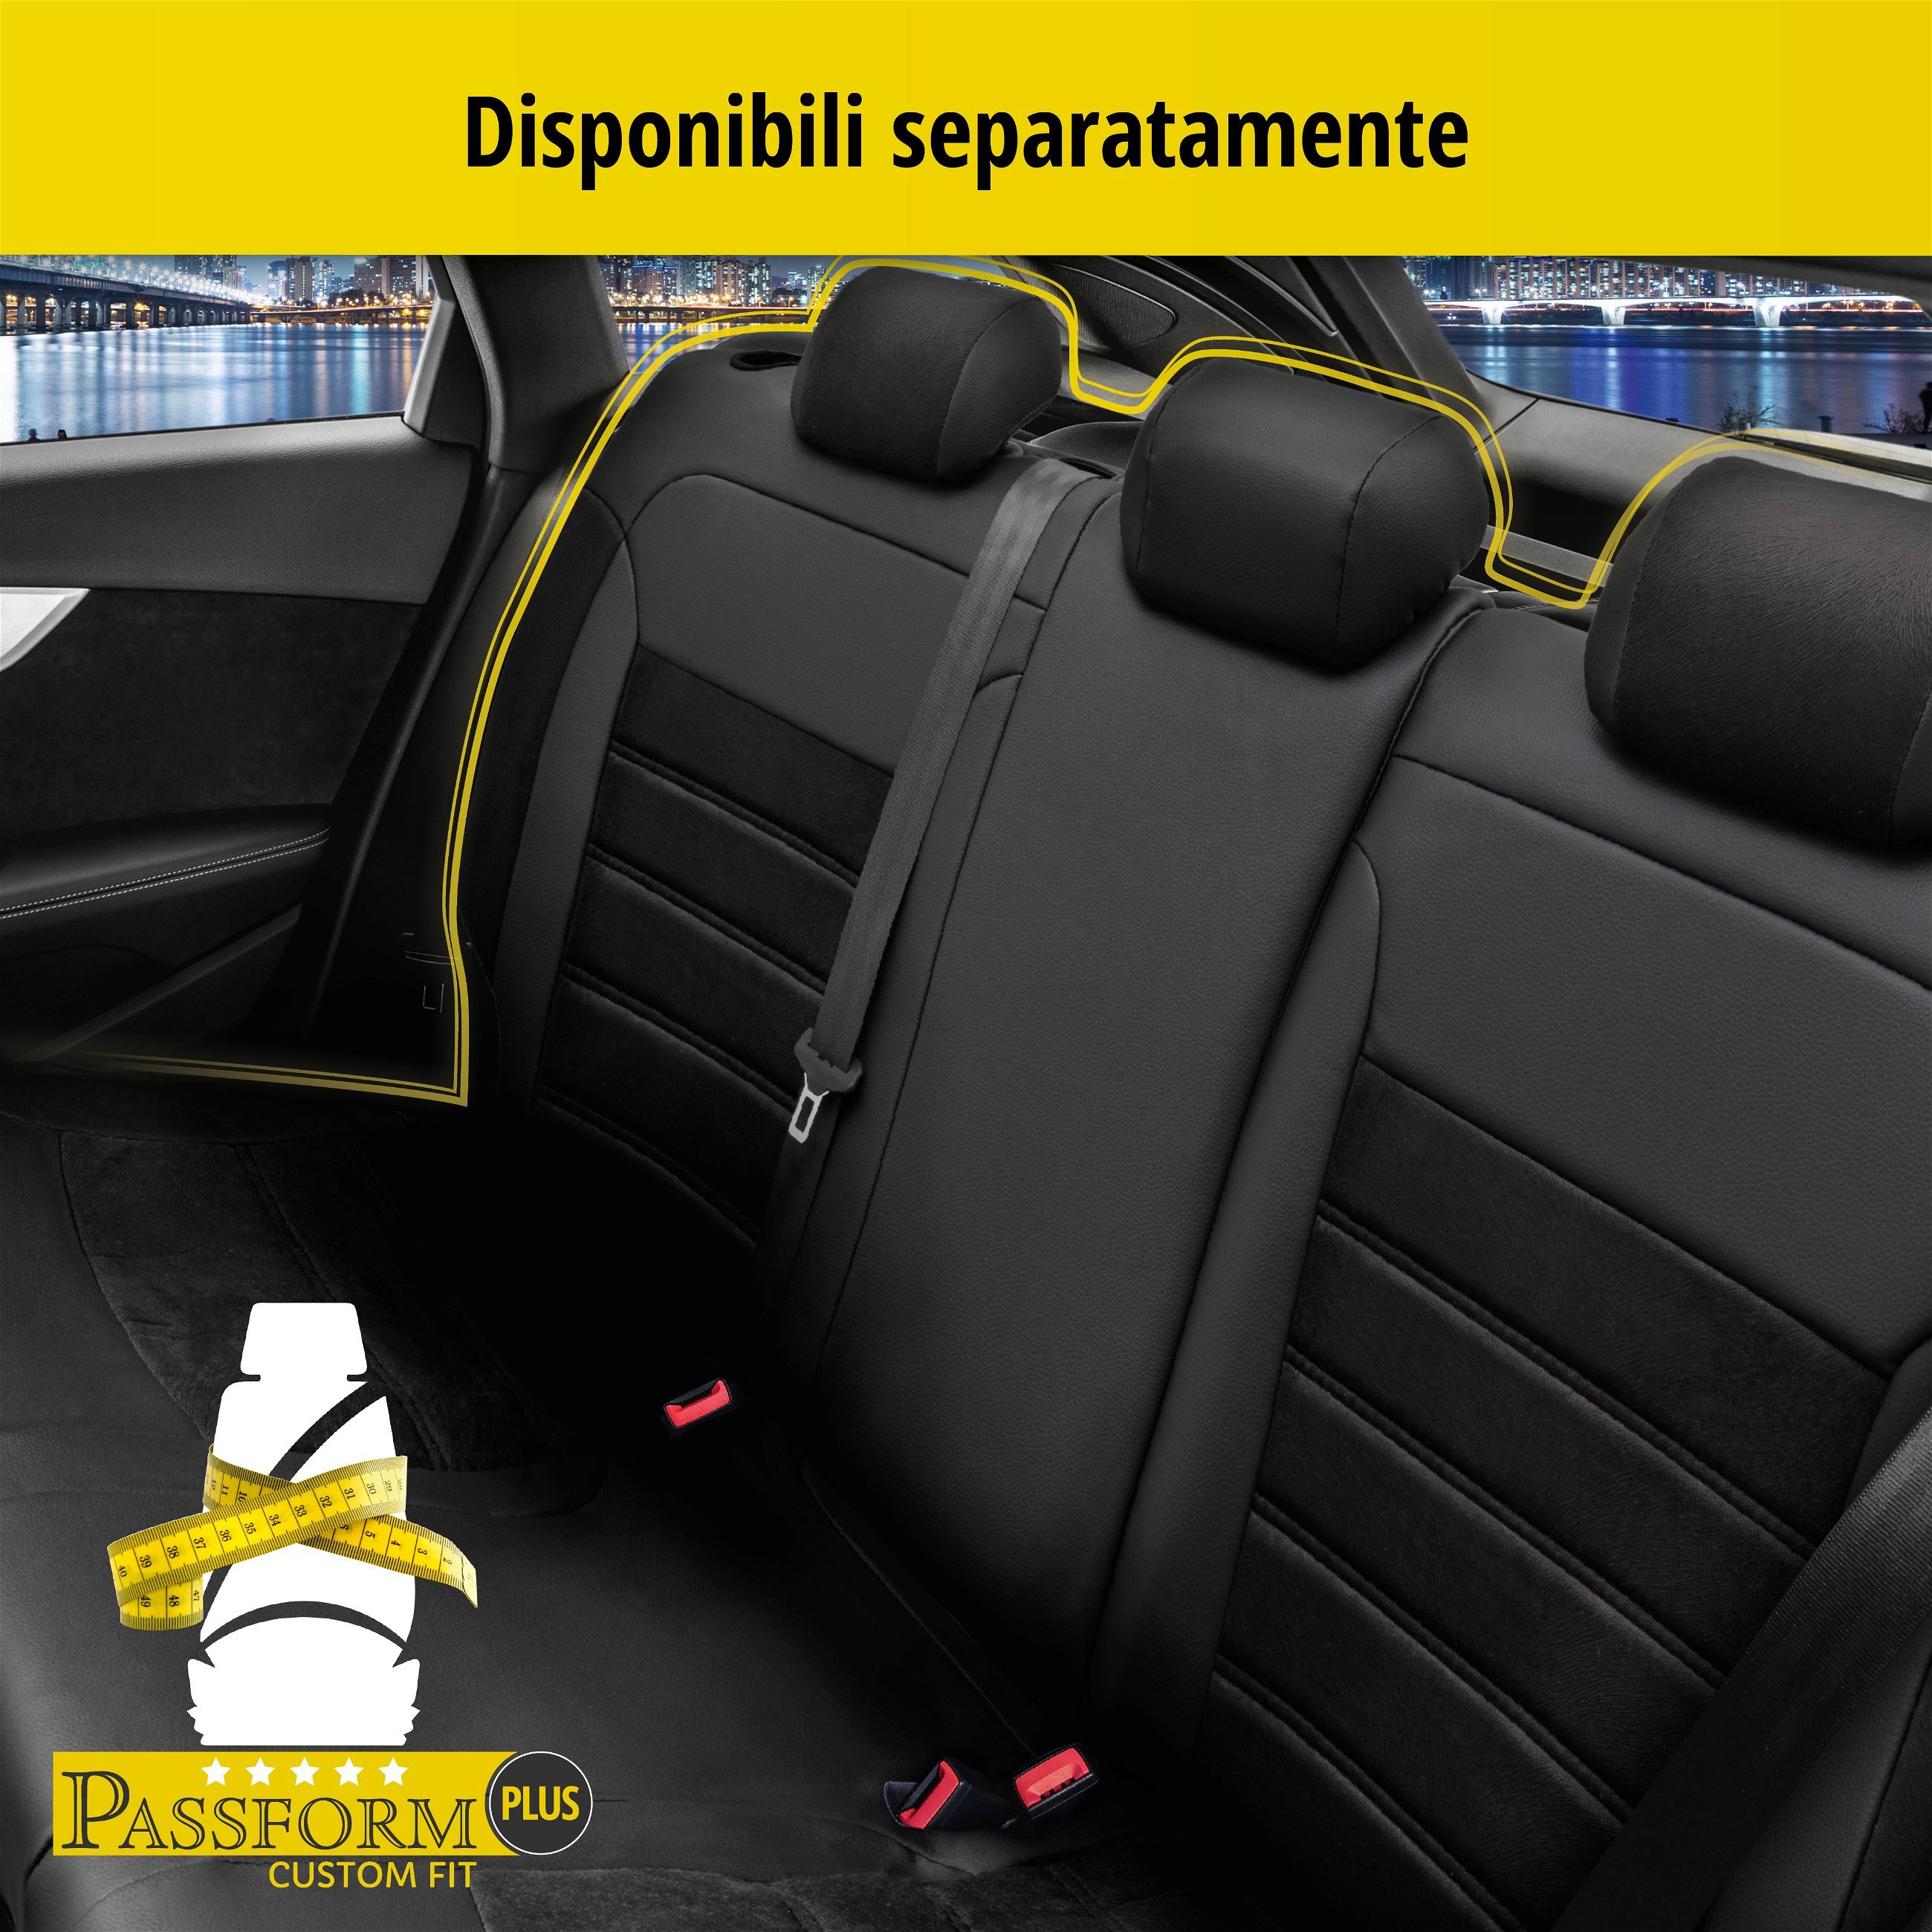 Coprisedili Bari per Seat Ibiza V (KJ1) 01/2017-Oggi, 2 coprisedili singoli per sedili normali